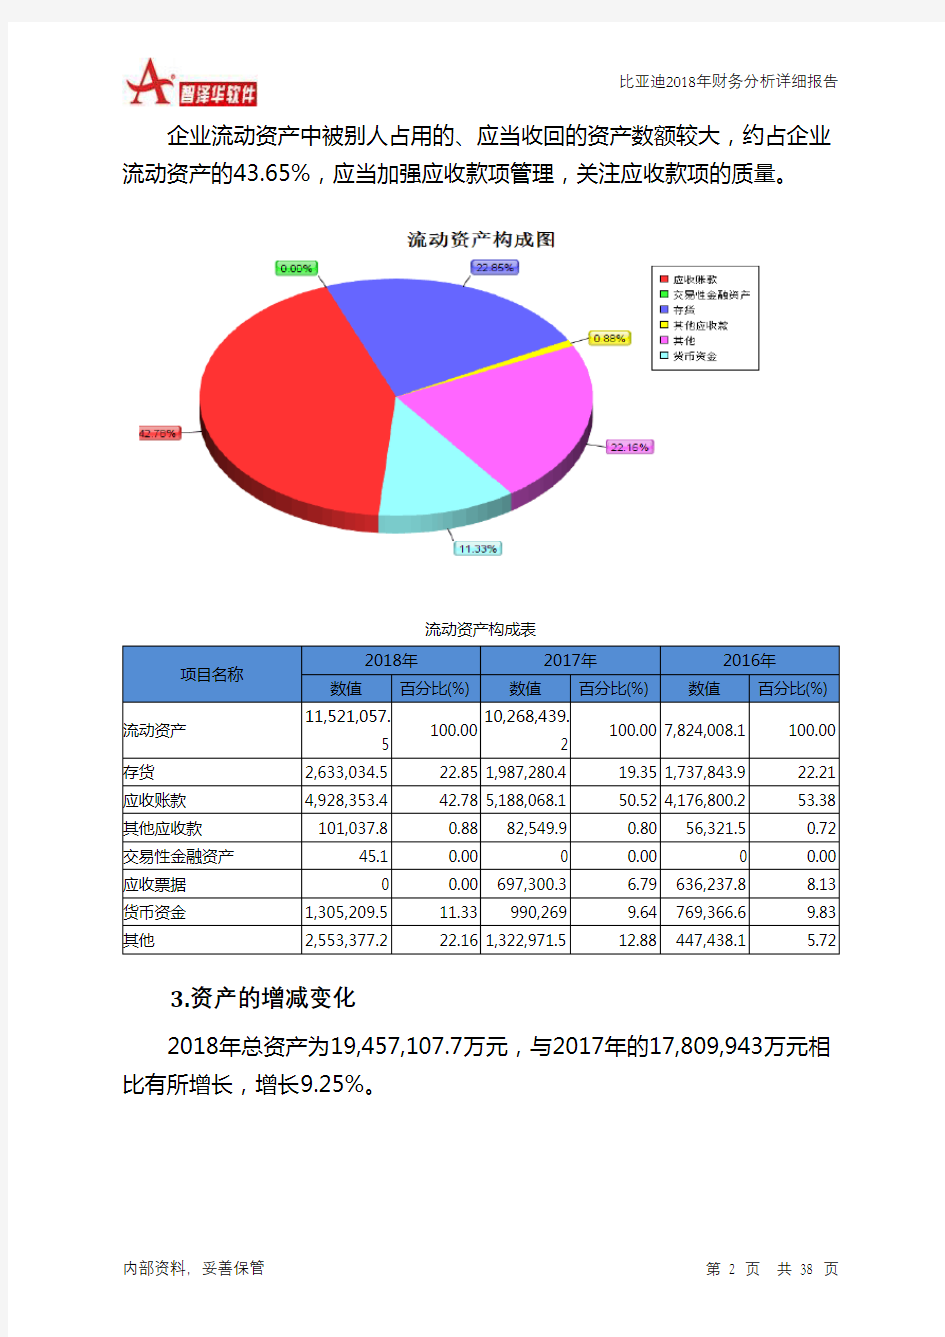 比亚迪2018年财务分析详细报告-智泽华